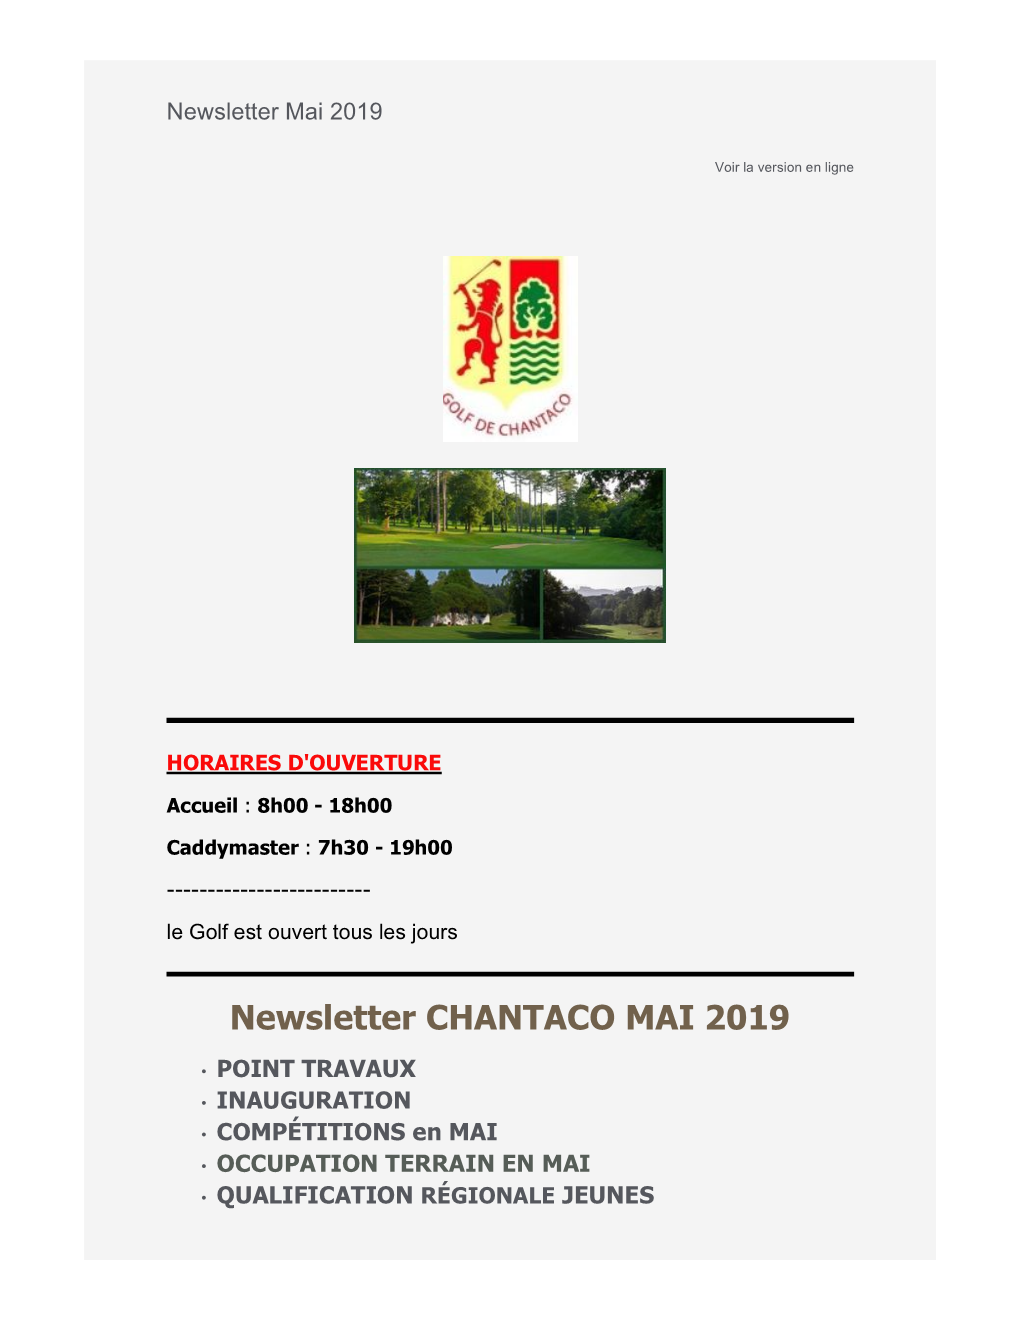 Newsletter CHANTACO MAI 2019